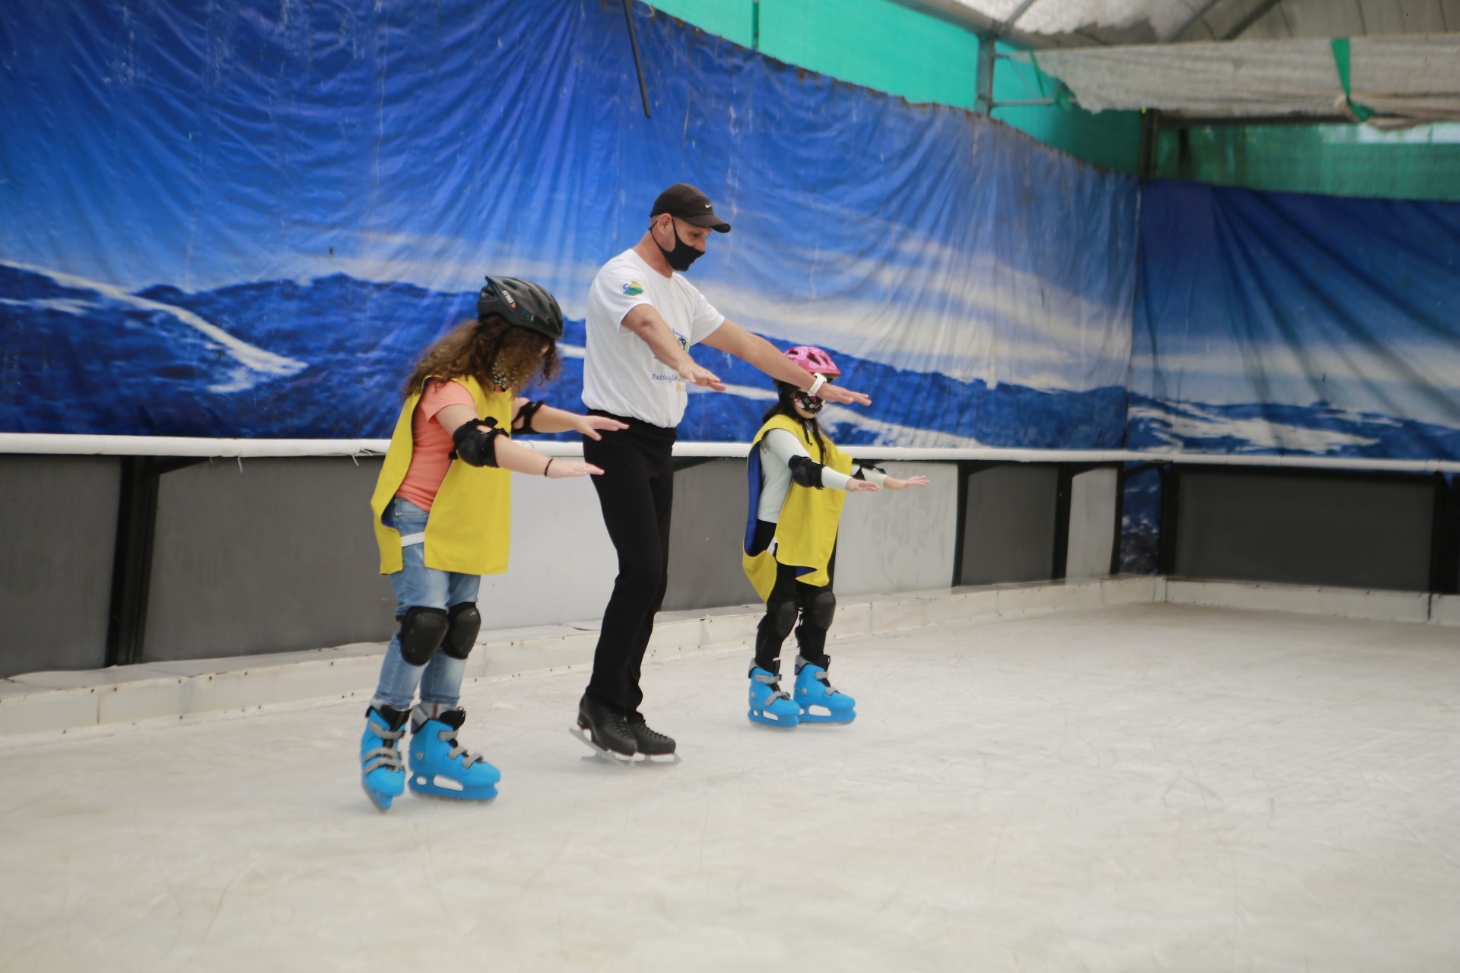 Escolinha de patinação artística tem aula inaugural em Guarujá | Jornal da Orla